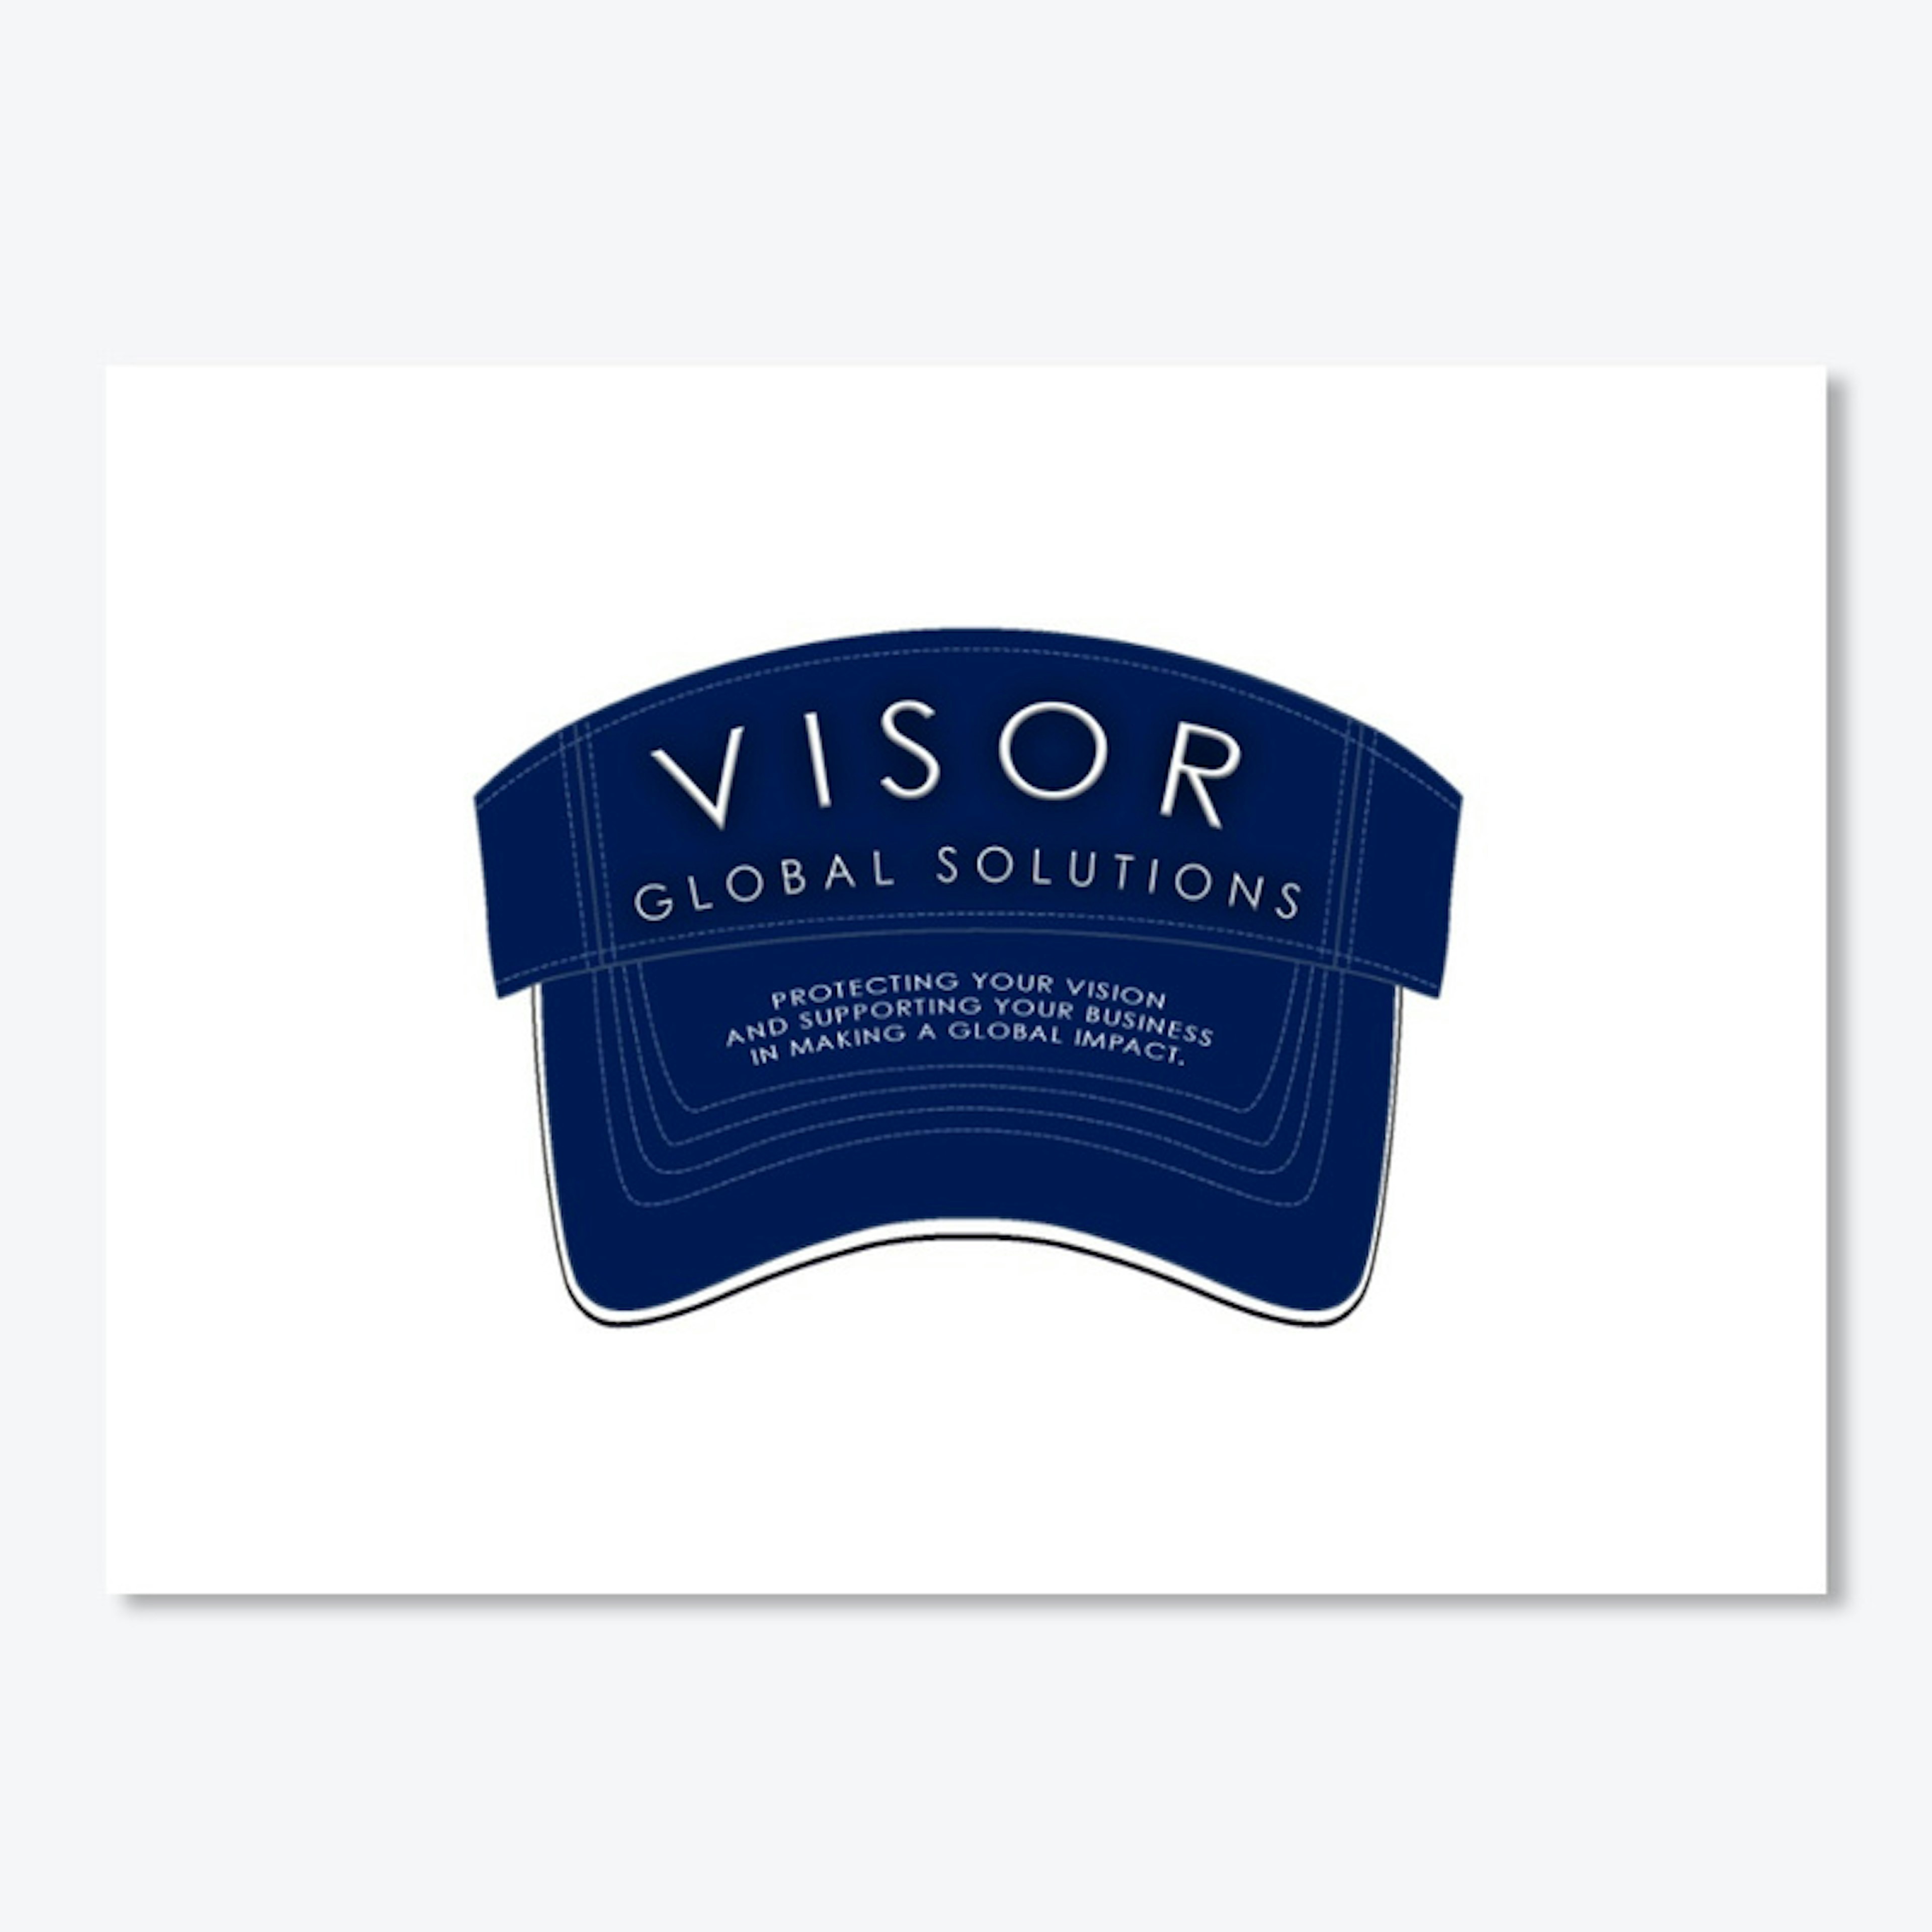 Visor Global Solutions